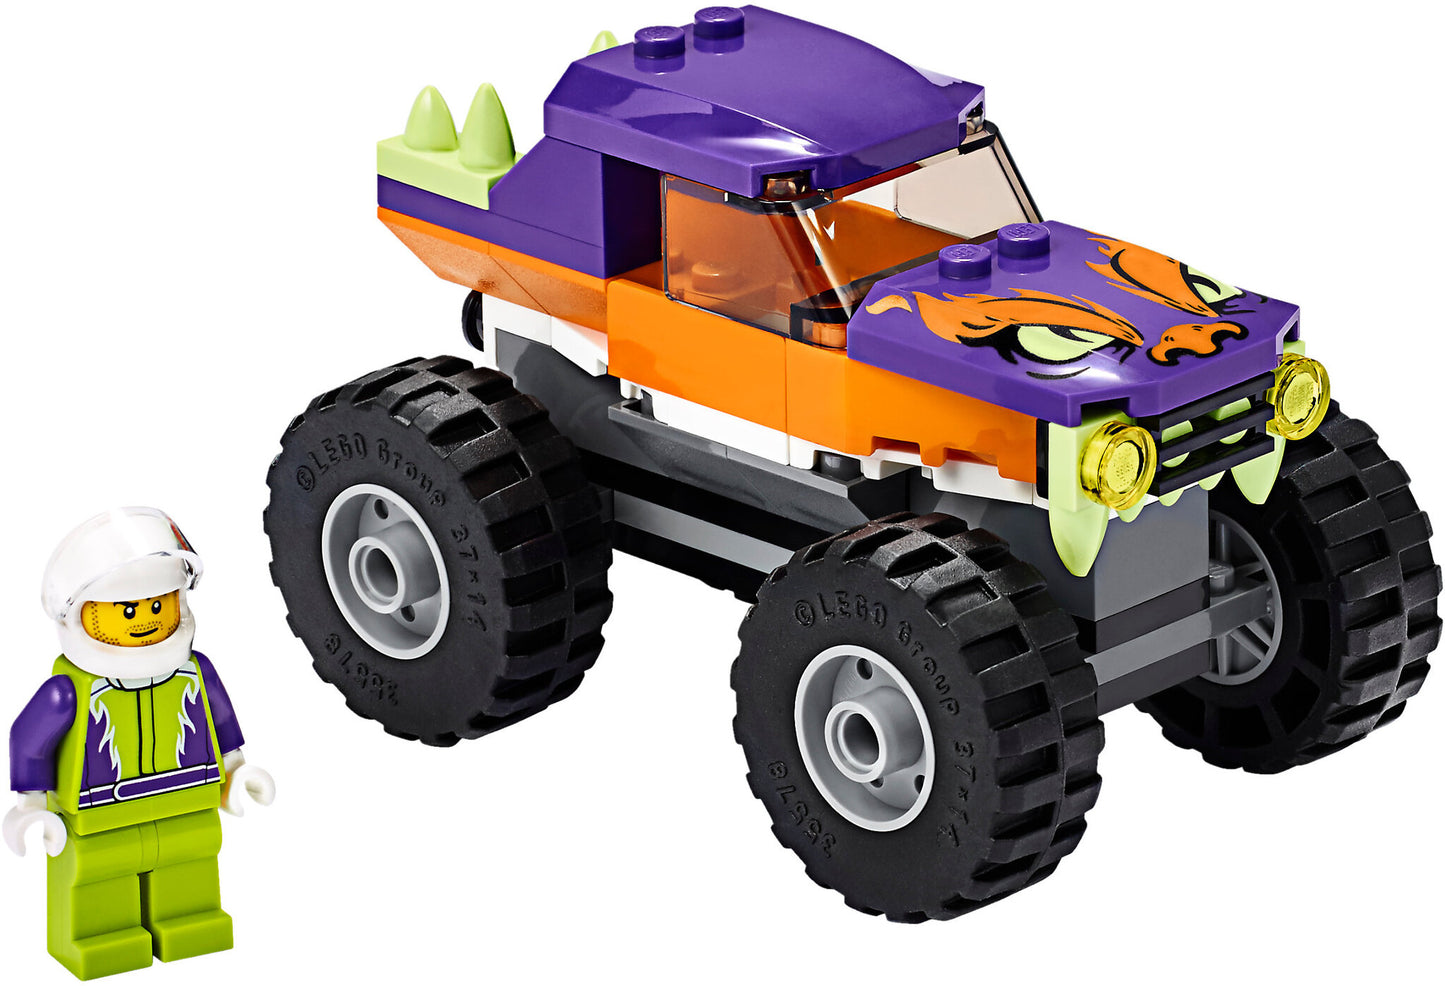 60251 LEGO City - Monster Truck